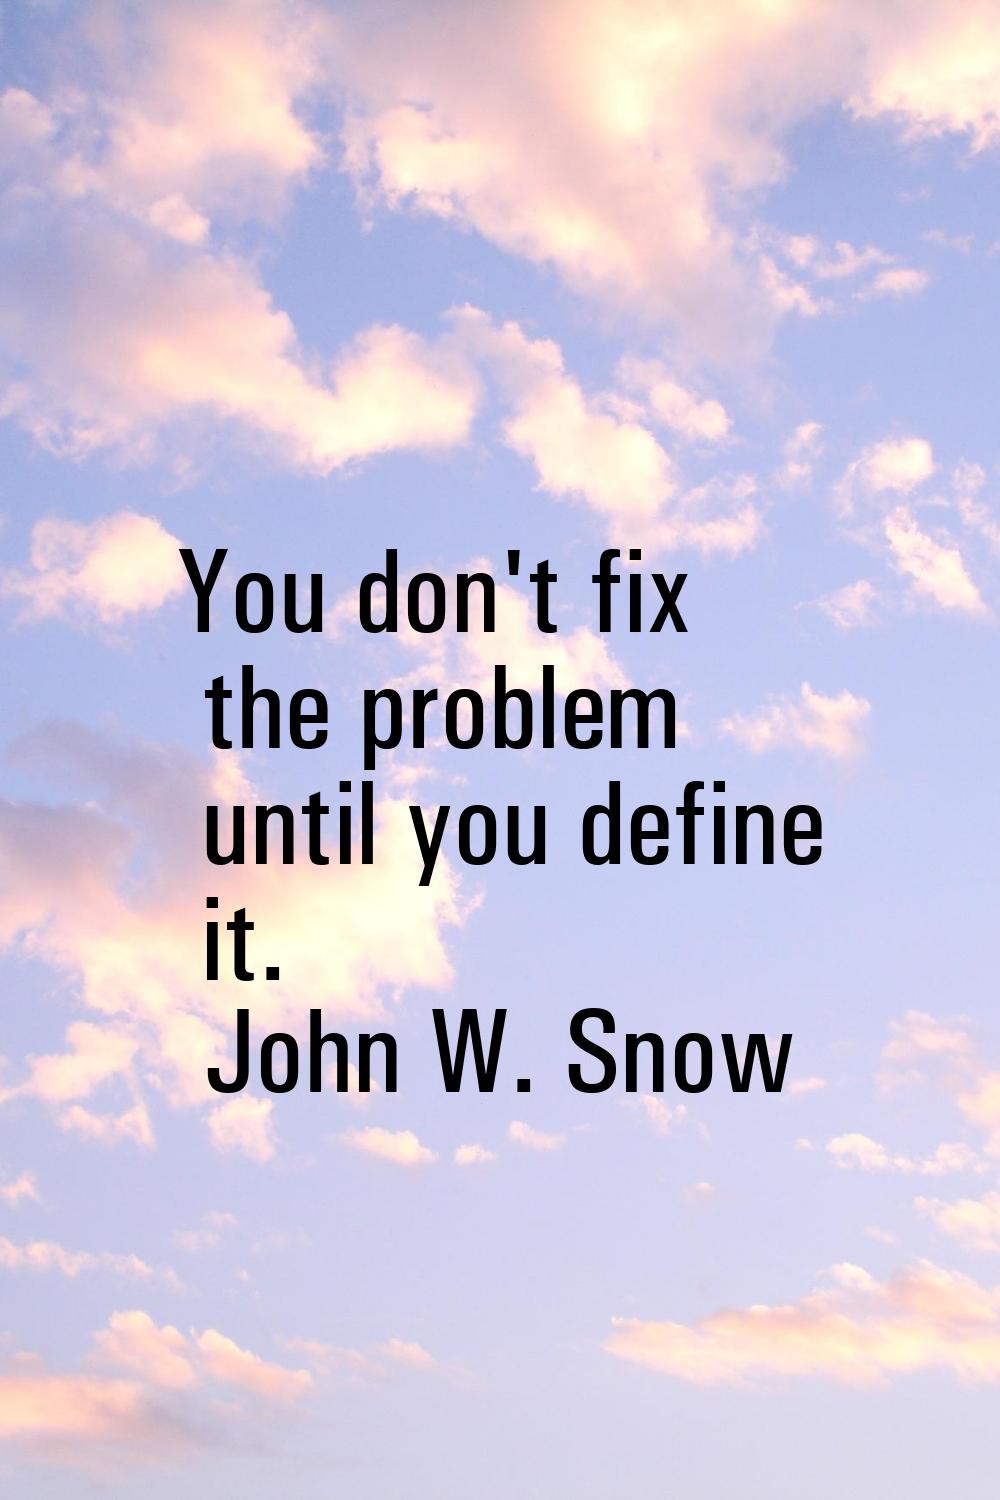 You don't fix the problem until you define it.